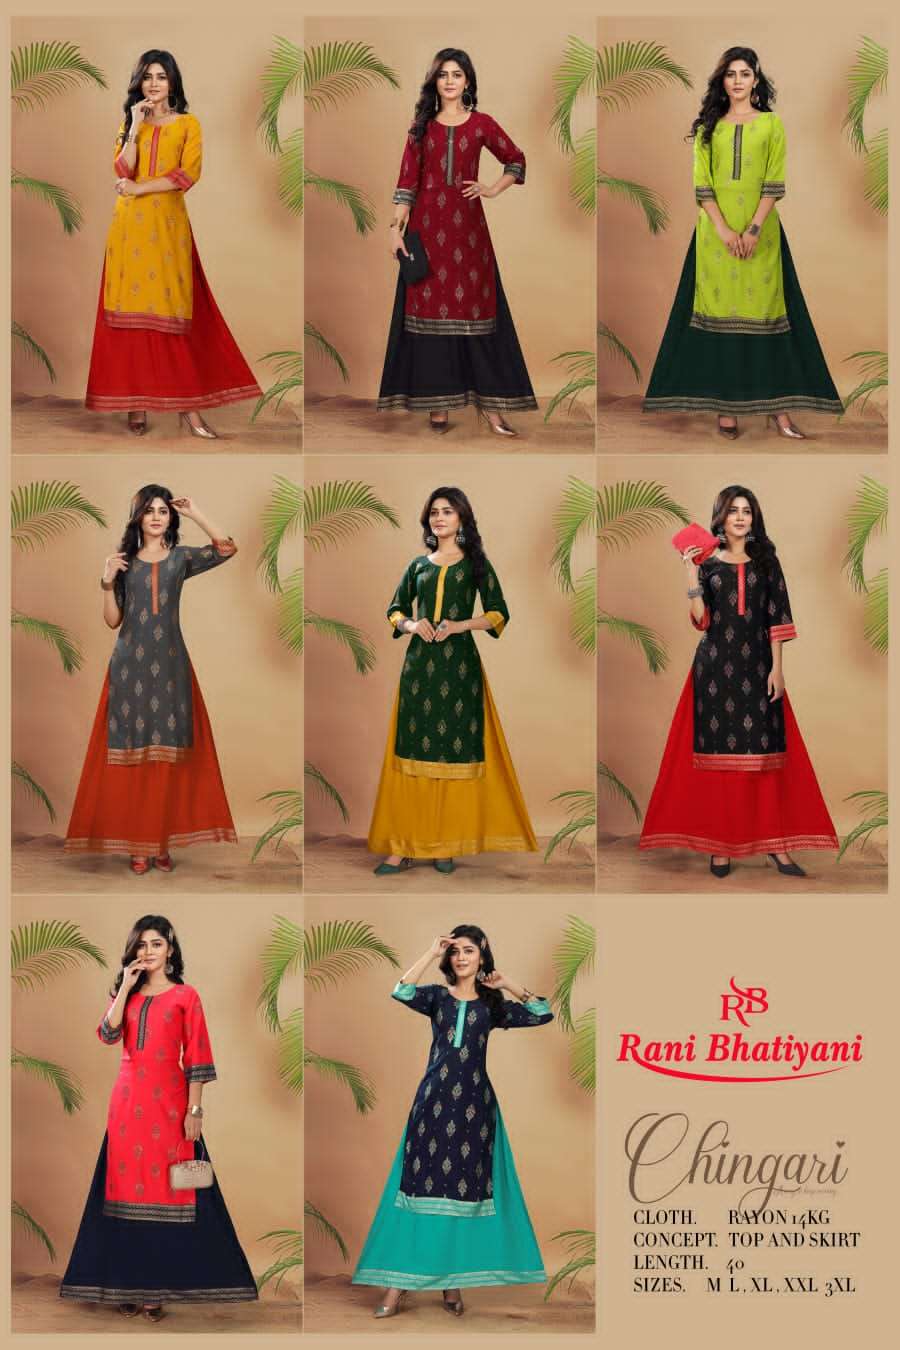 rani bhatiyani chingari vol 1 rayon fancy kurtis collection wholesale price surat